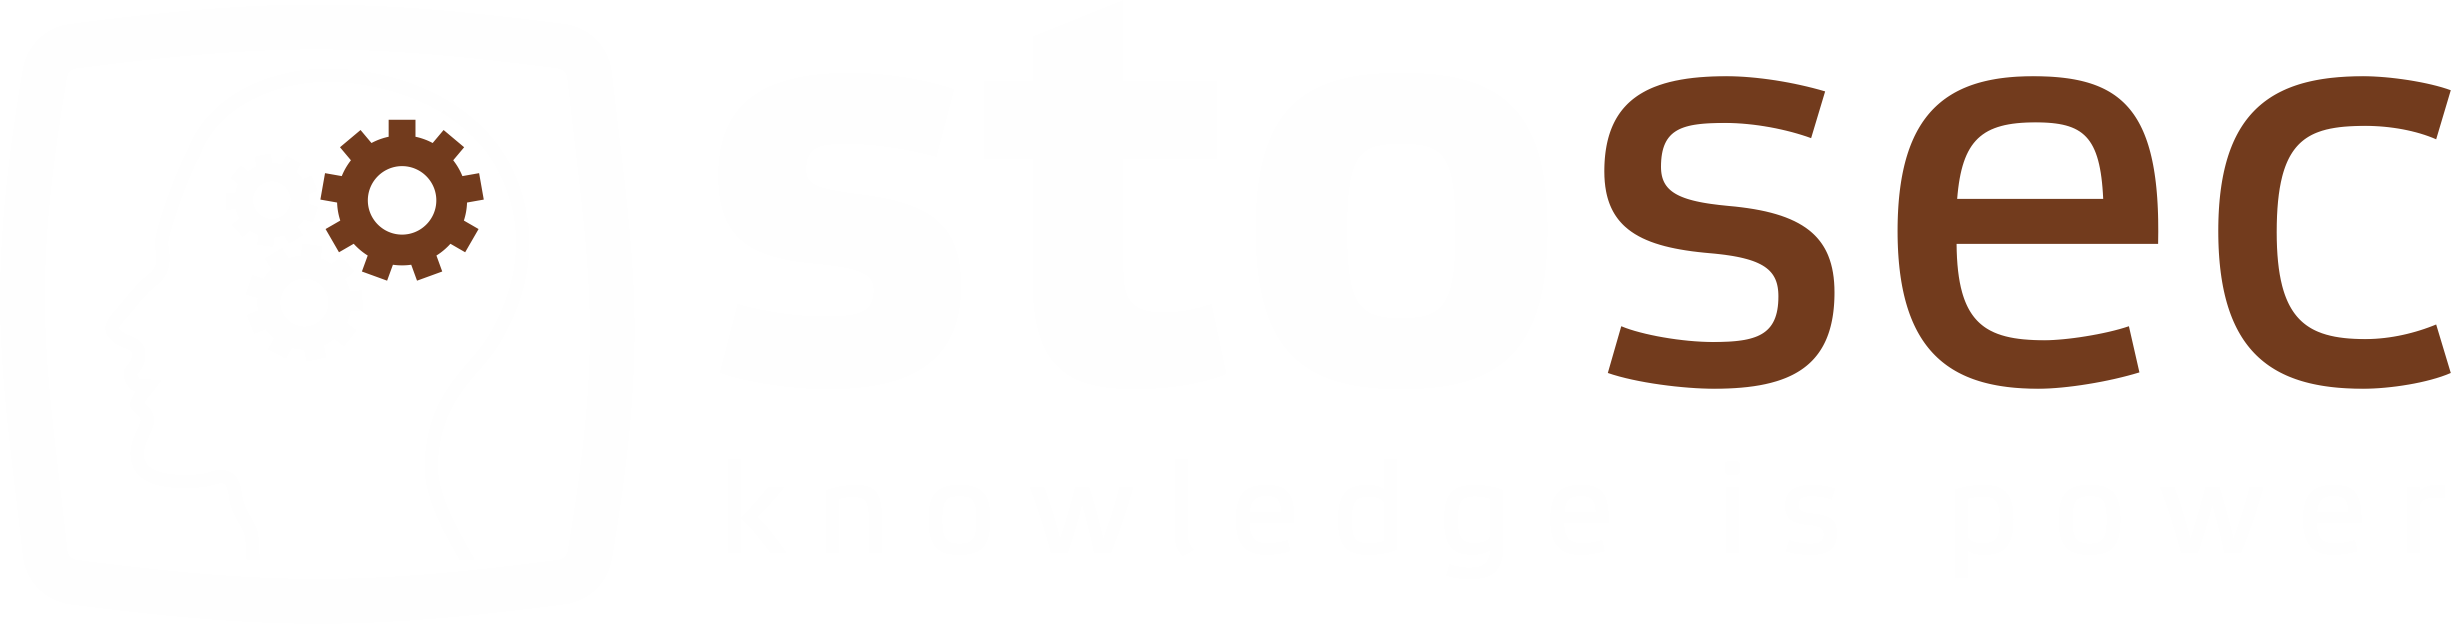 StoSec